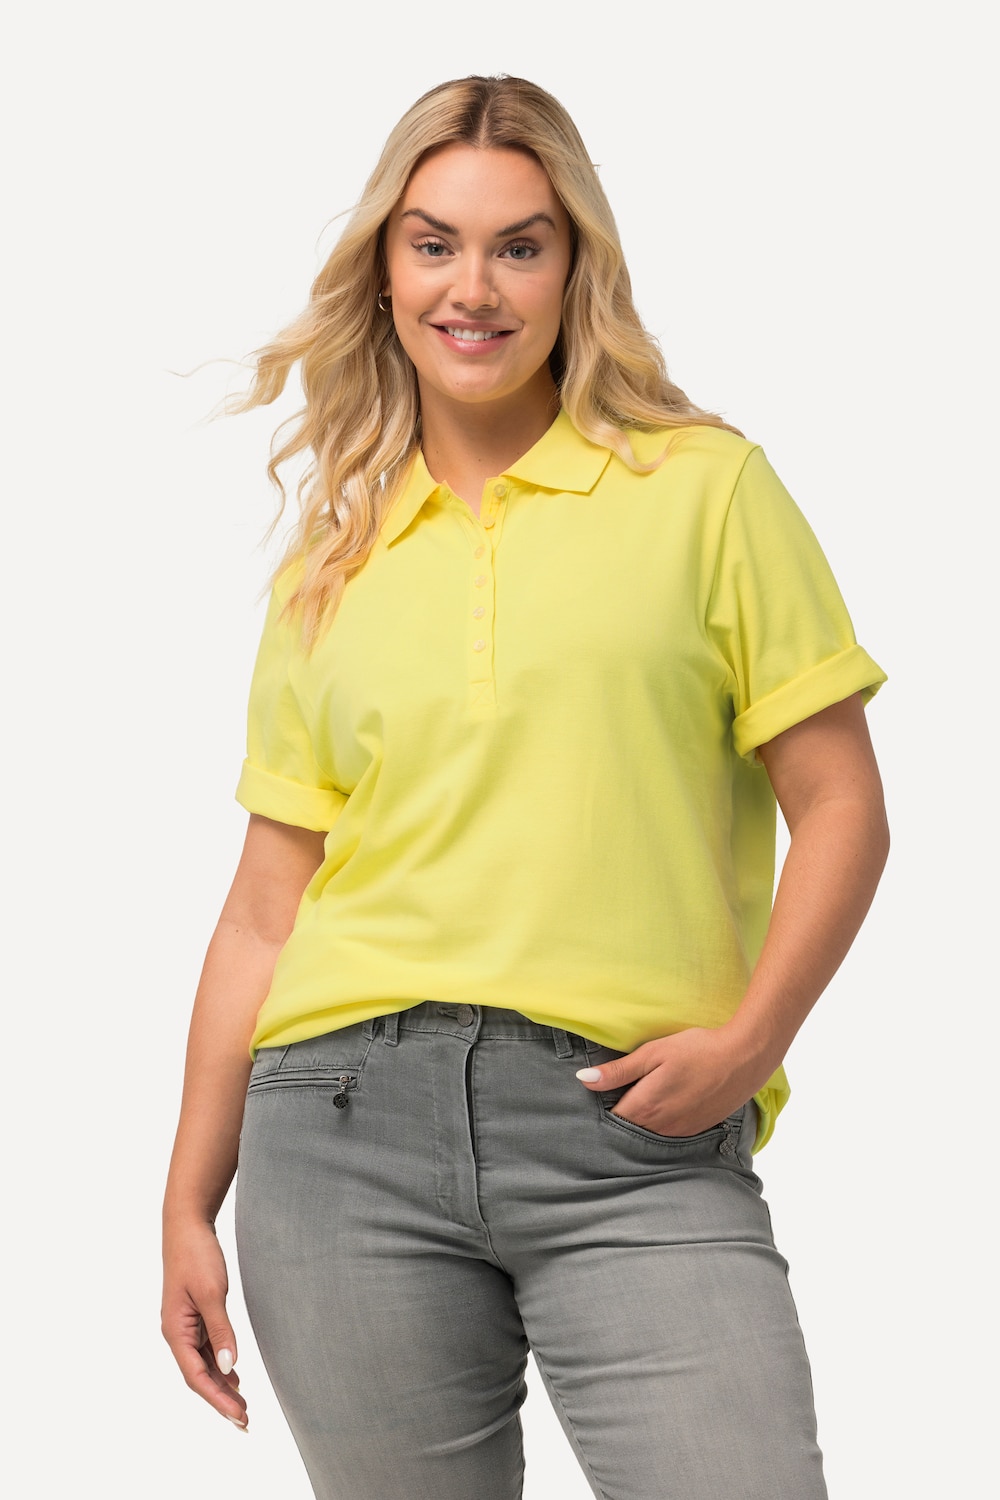 Grote Maten Poloshirt, Dames, geel, Maat: 42/44, Katoen, Ulla Popken